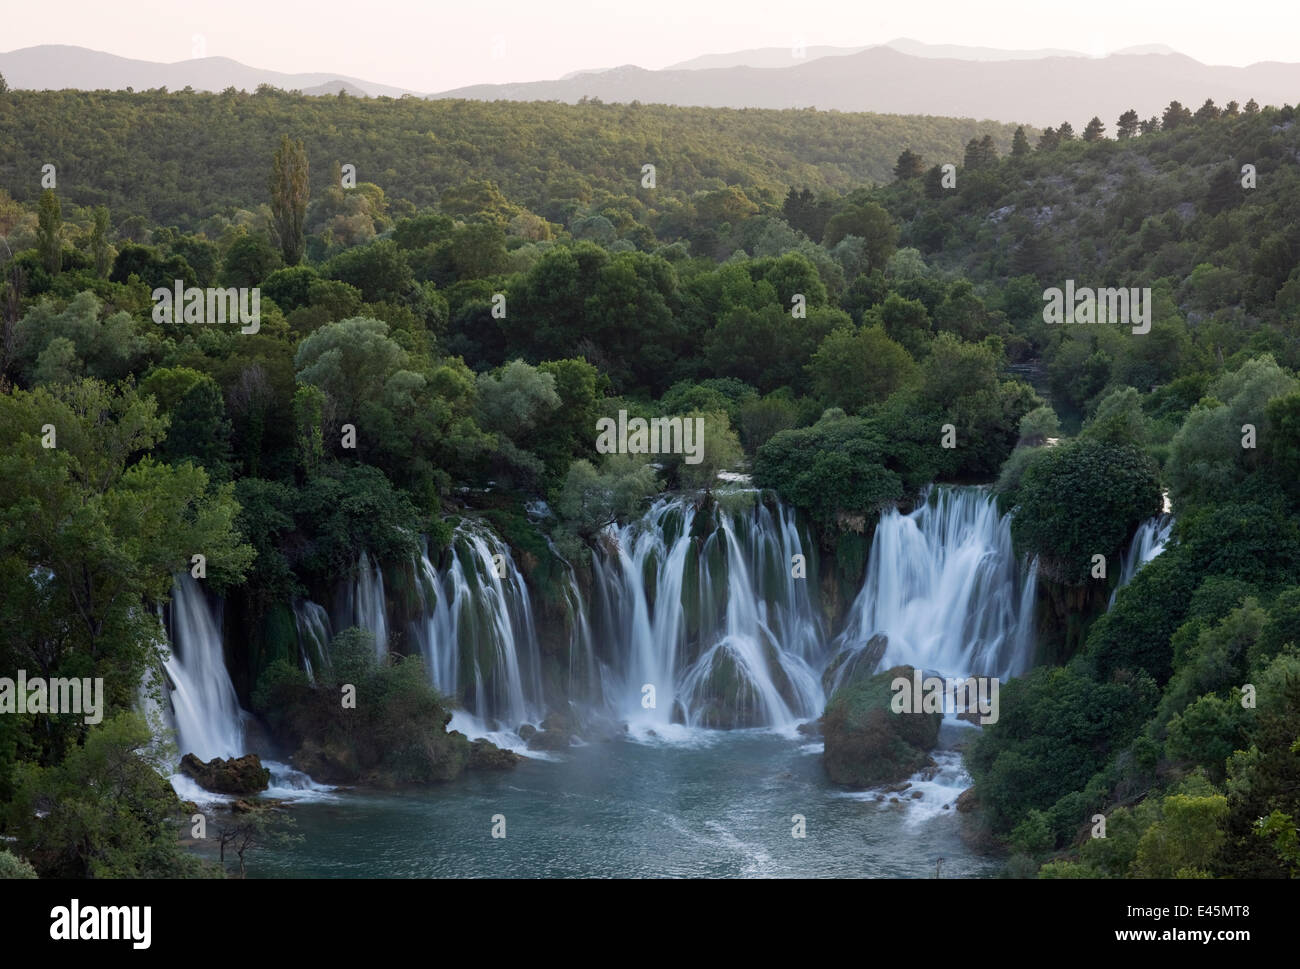 Les chutes de Kravice le long de la rivière Trebizat River, Bosnie-Herzégovine, mai 2009 Banque D'Images